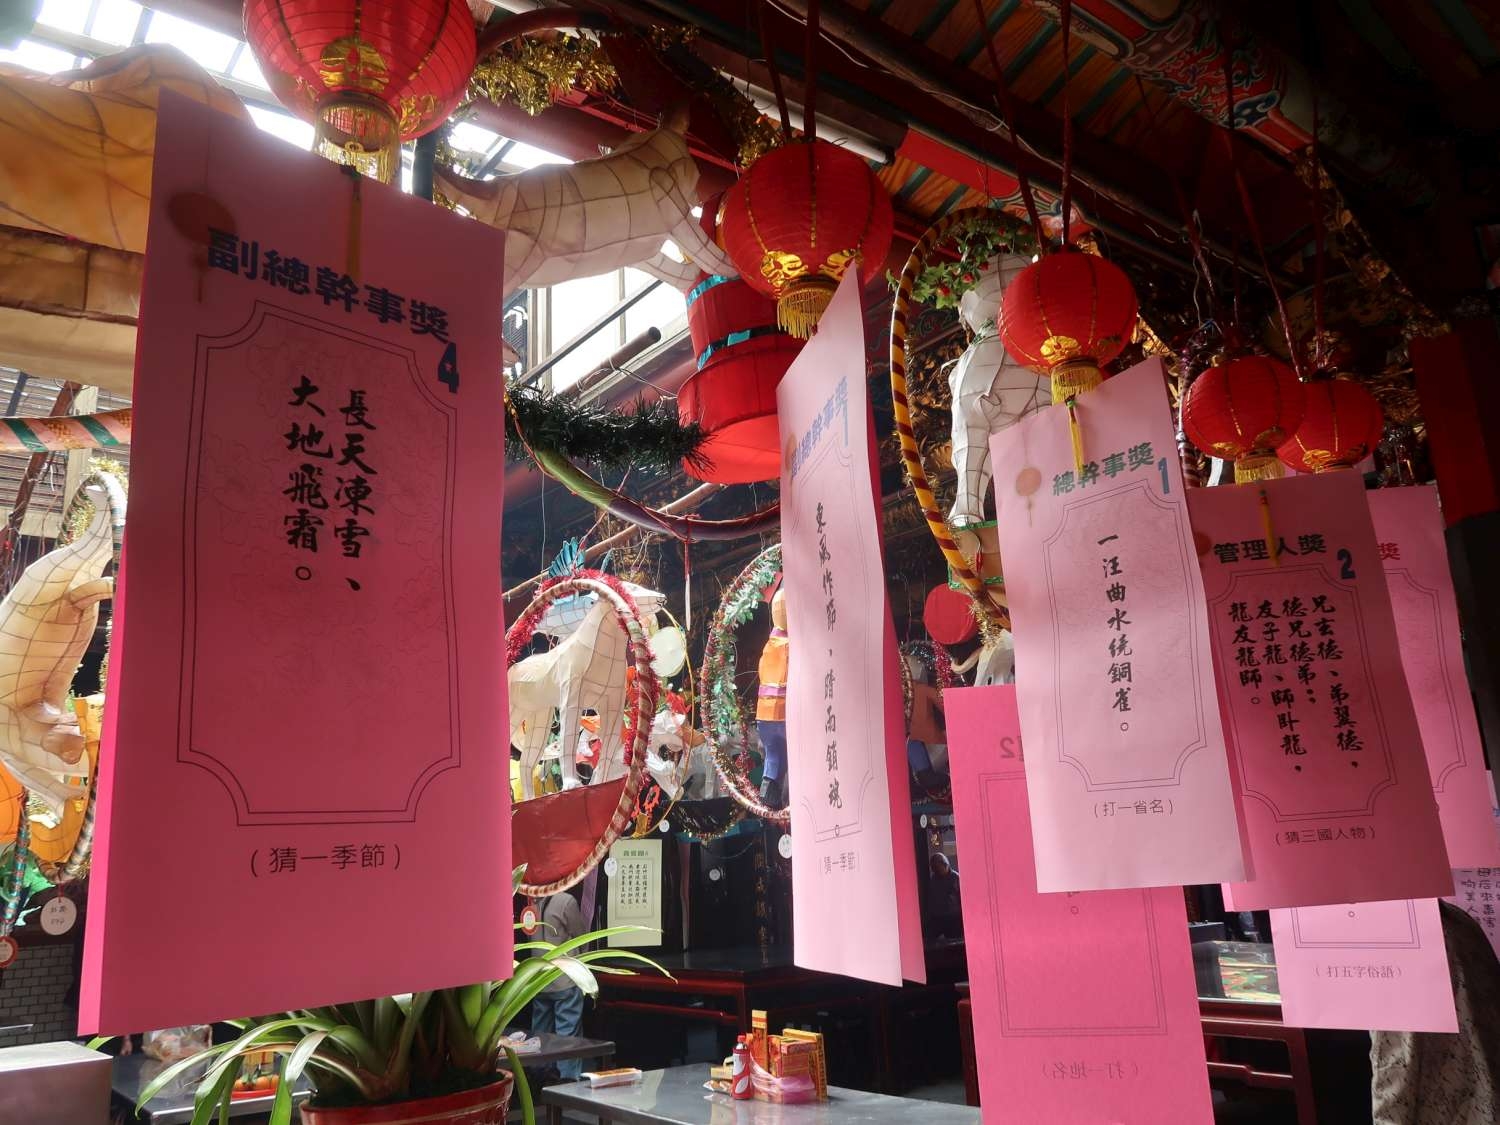 「狗來旺 慶元宵」新竹都城隍廟花燈藝術展 即日起至4月2日熱鬧登場